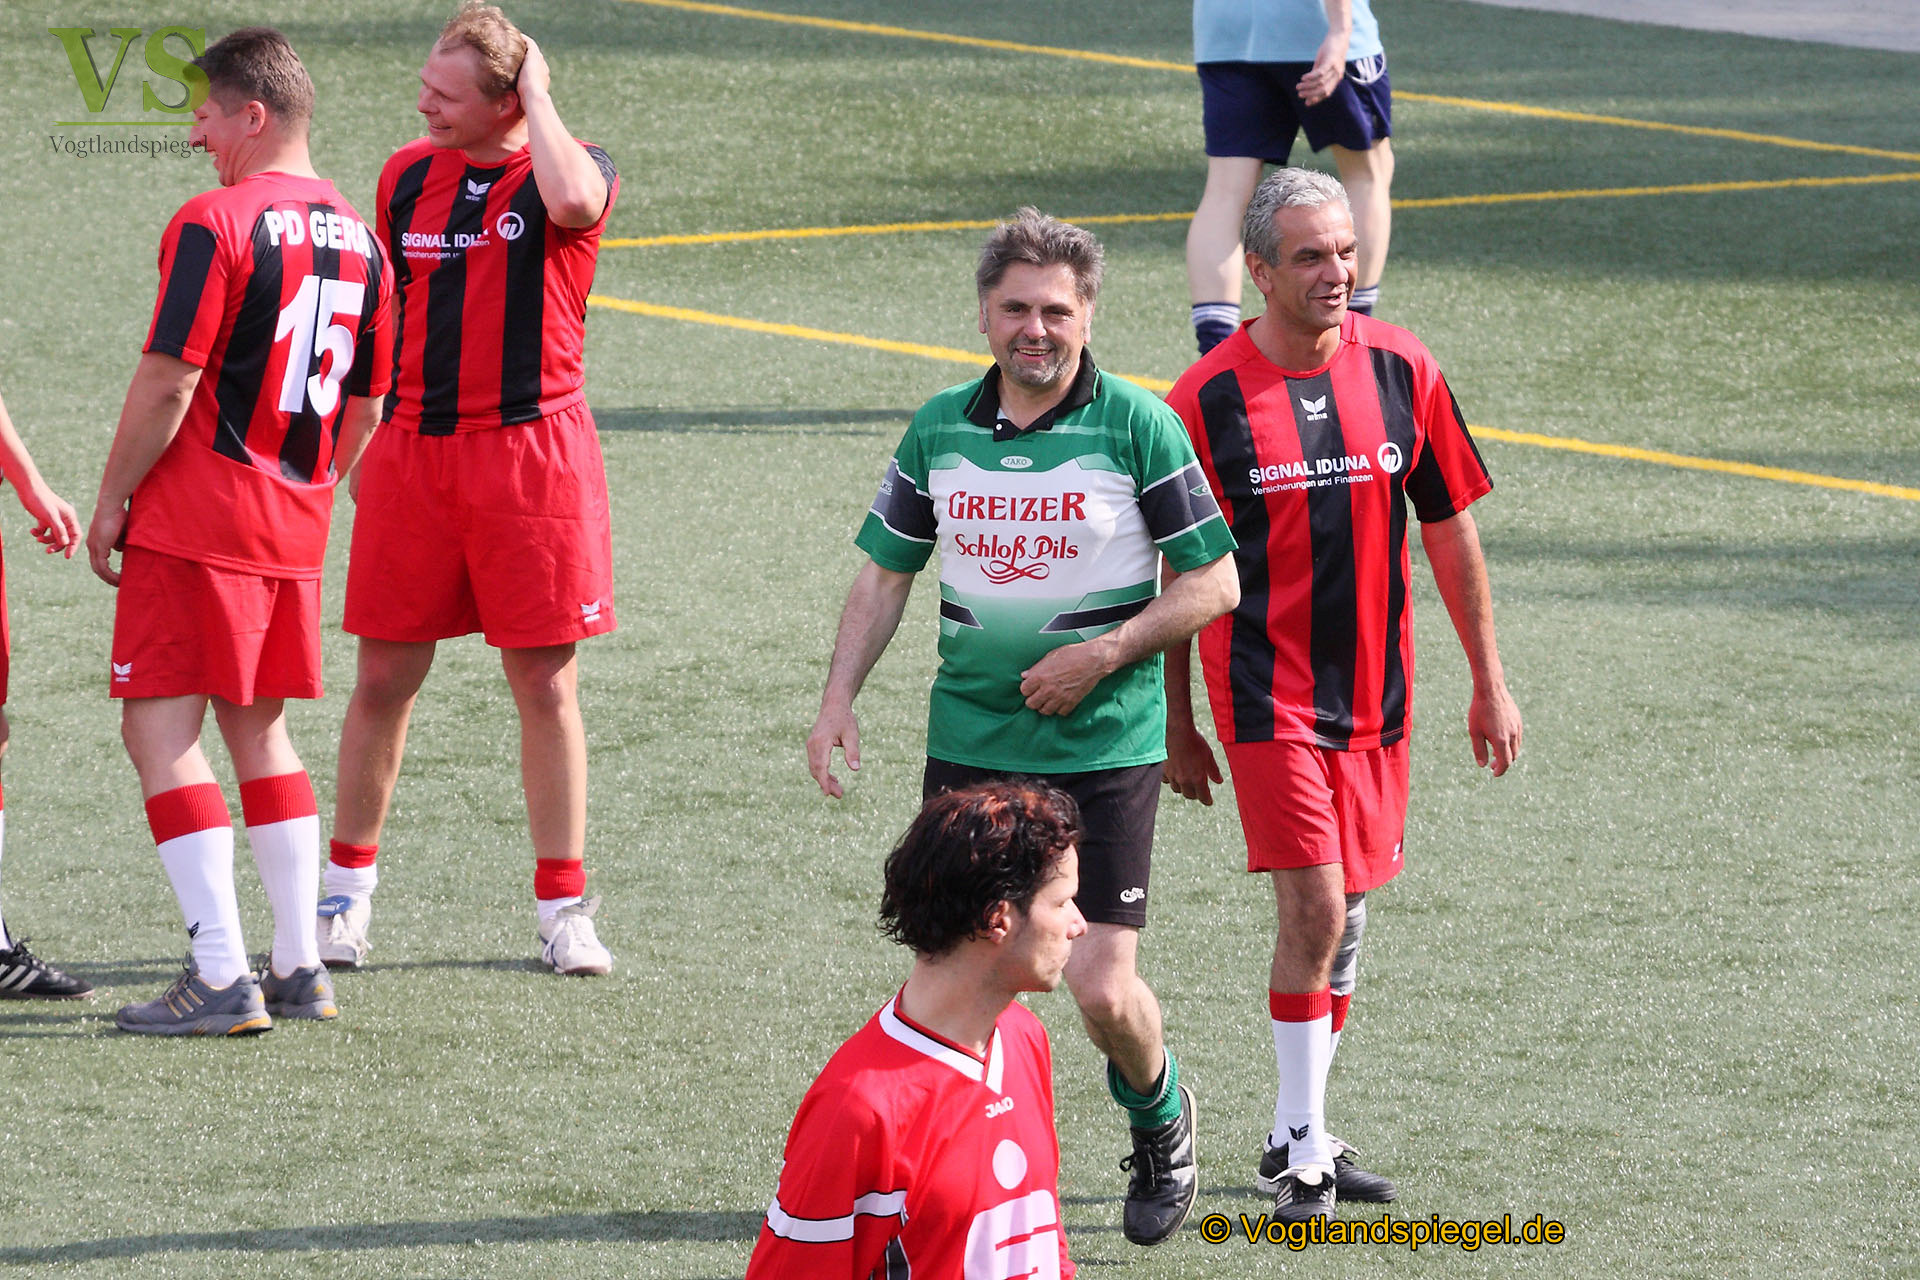 2. Benefiz-Fußballturnier der Stadt Greiz auf dem Tempelwald